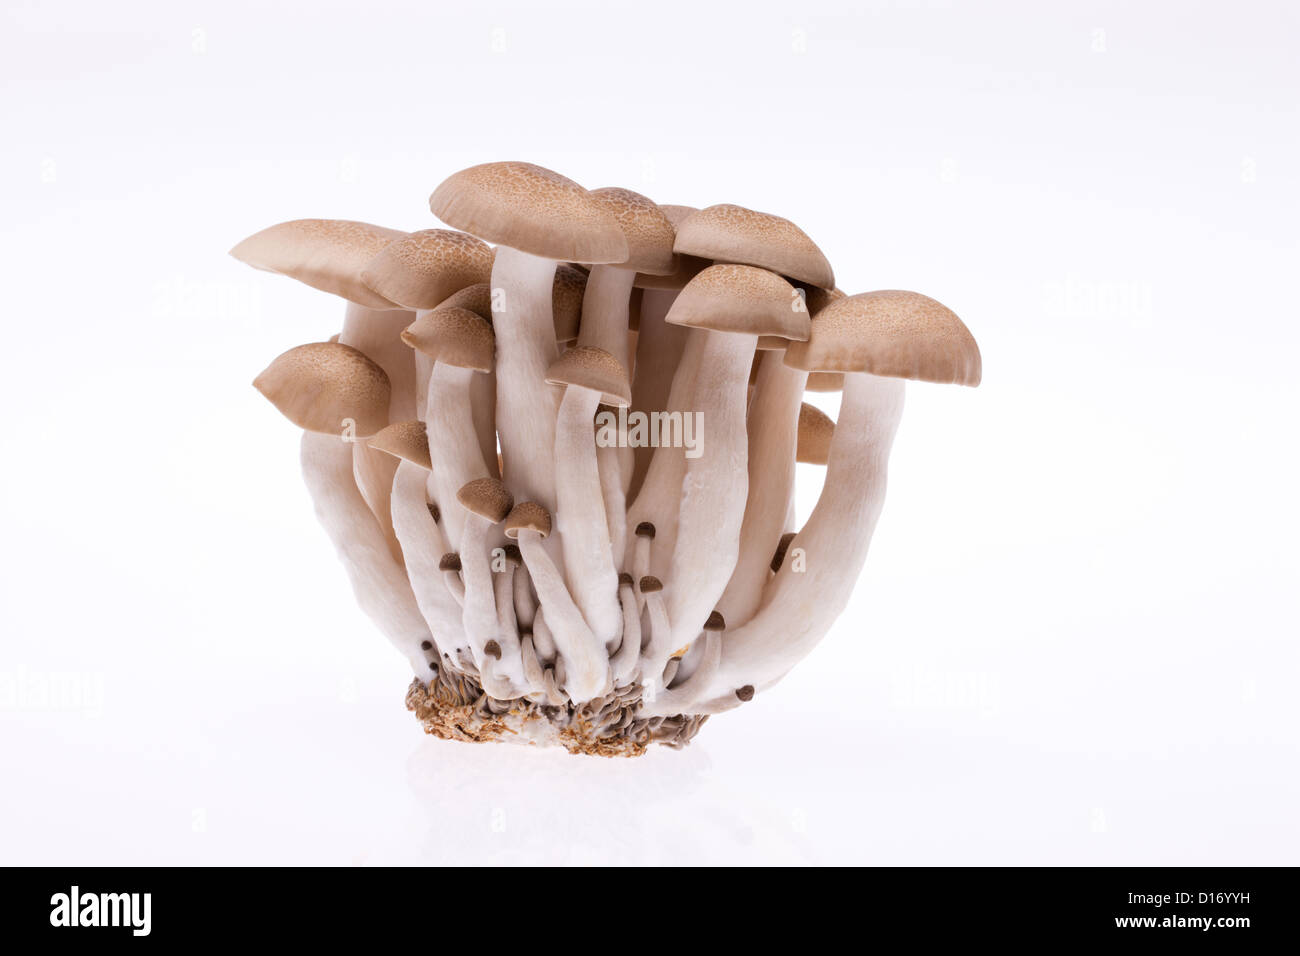 Shimeji mushrooms against white background Stock Photo